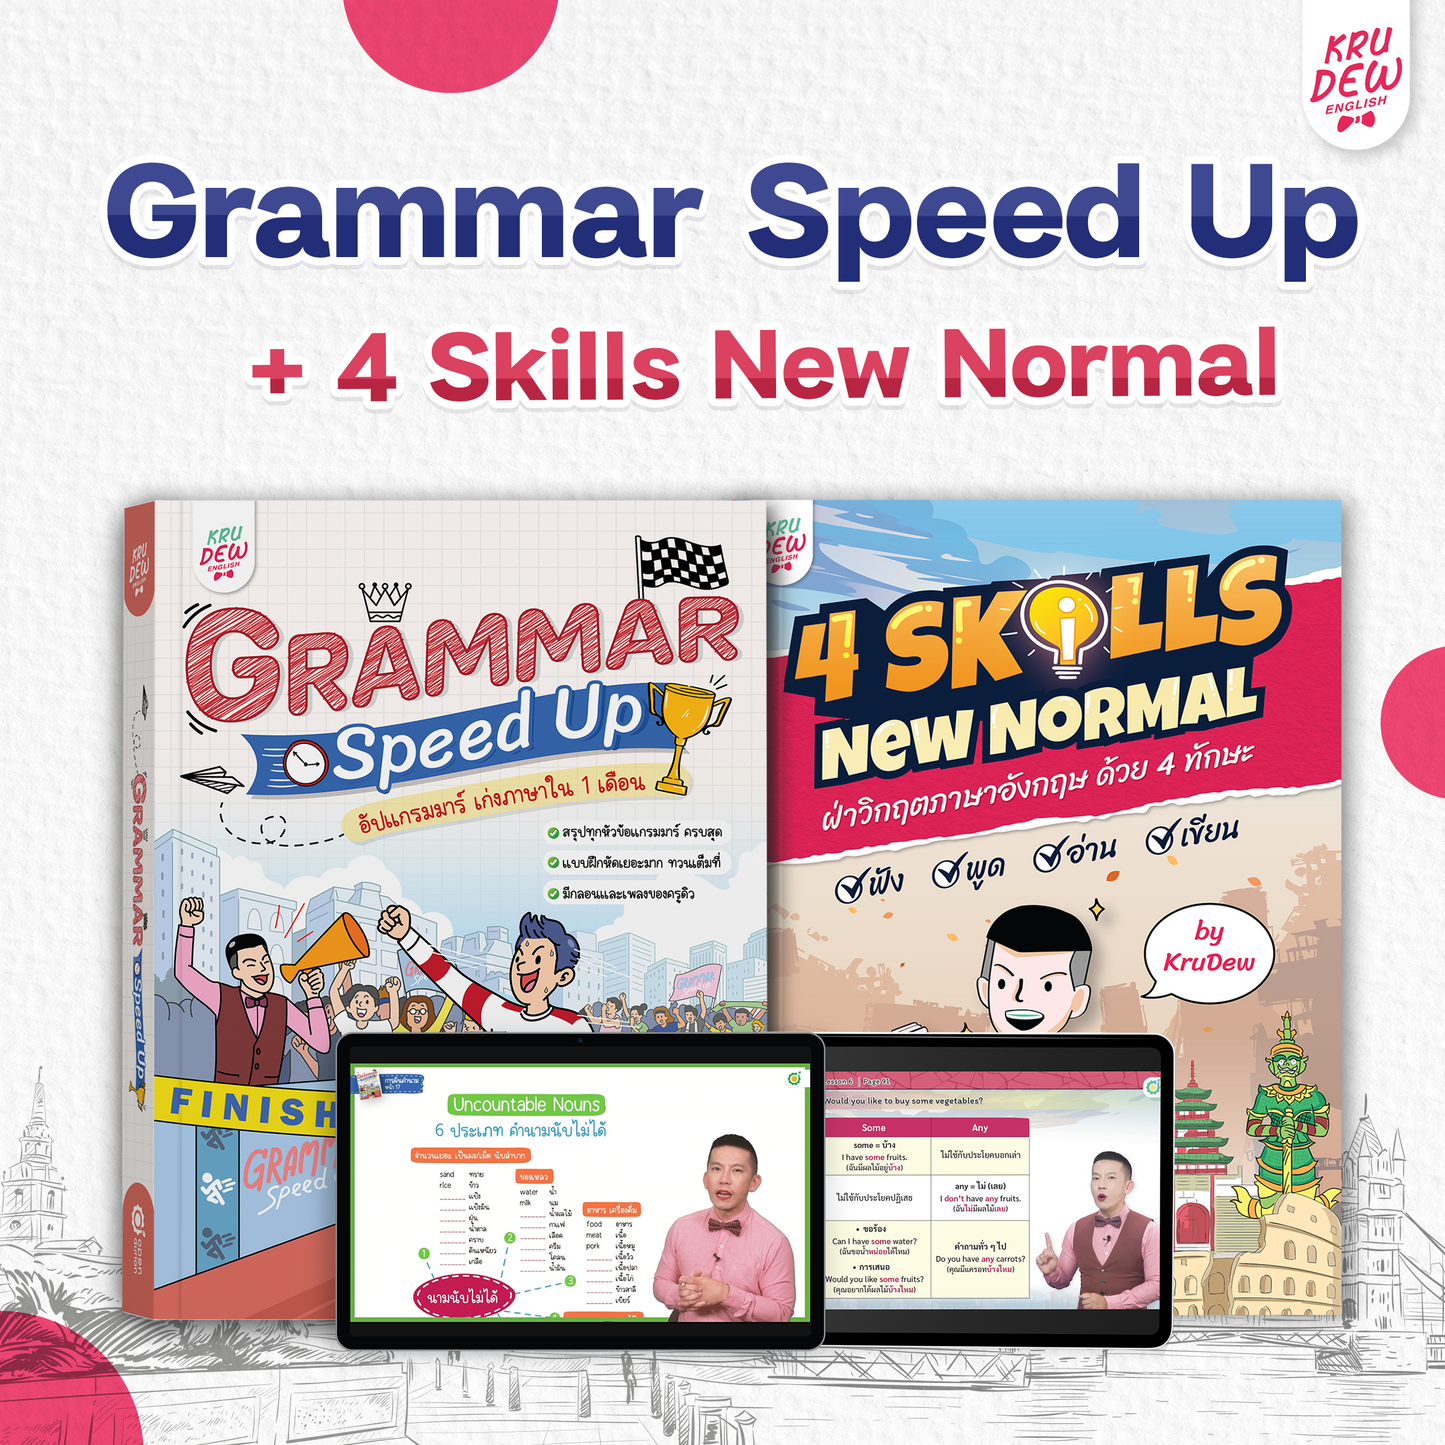 หนังสือ GRAMMAR SPEED UP! อัปแกรมมาร์ เก่งภาษาใน 1 เดือน